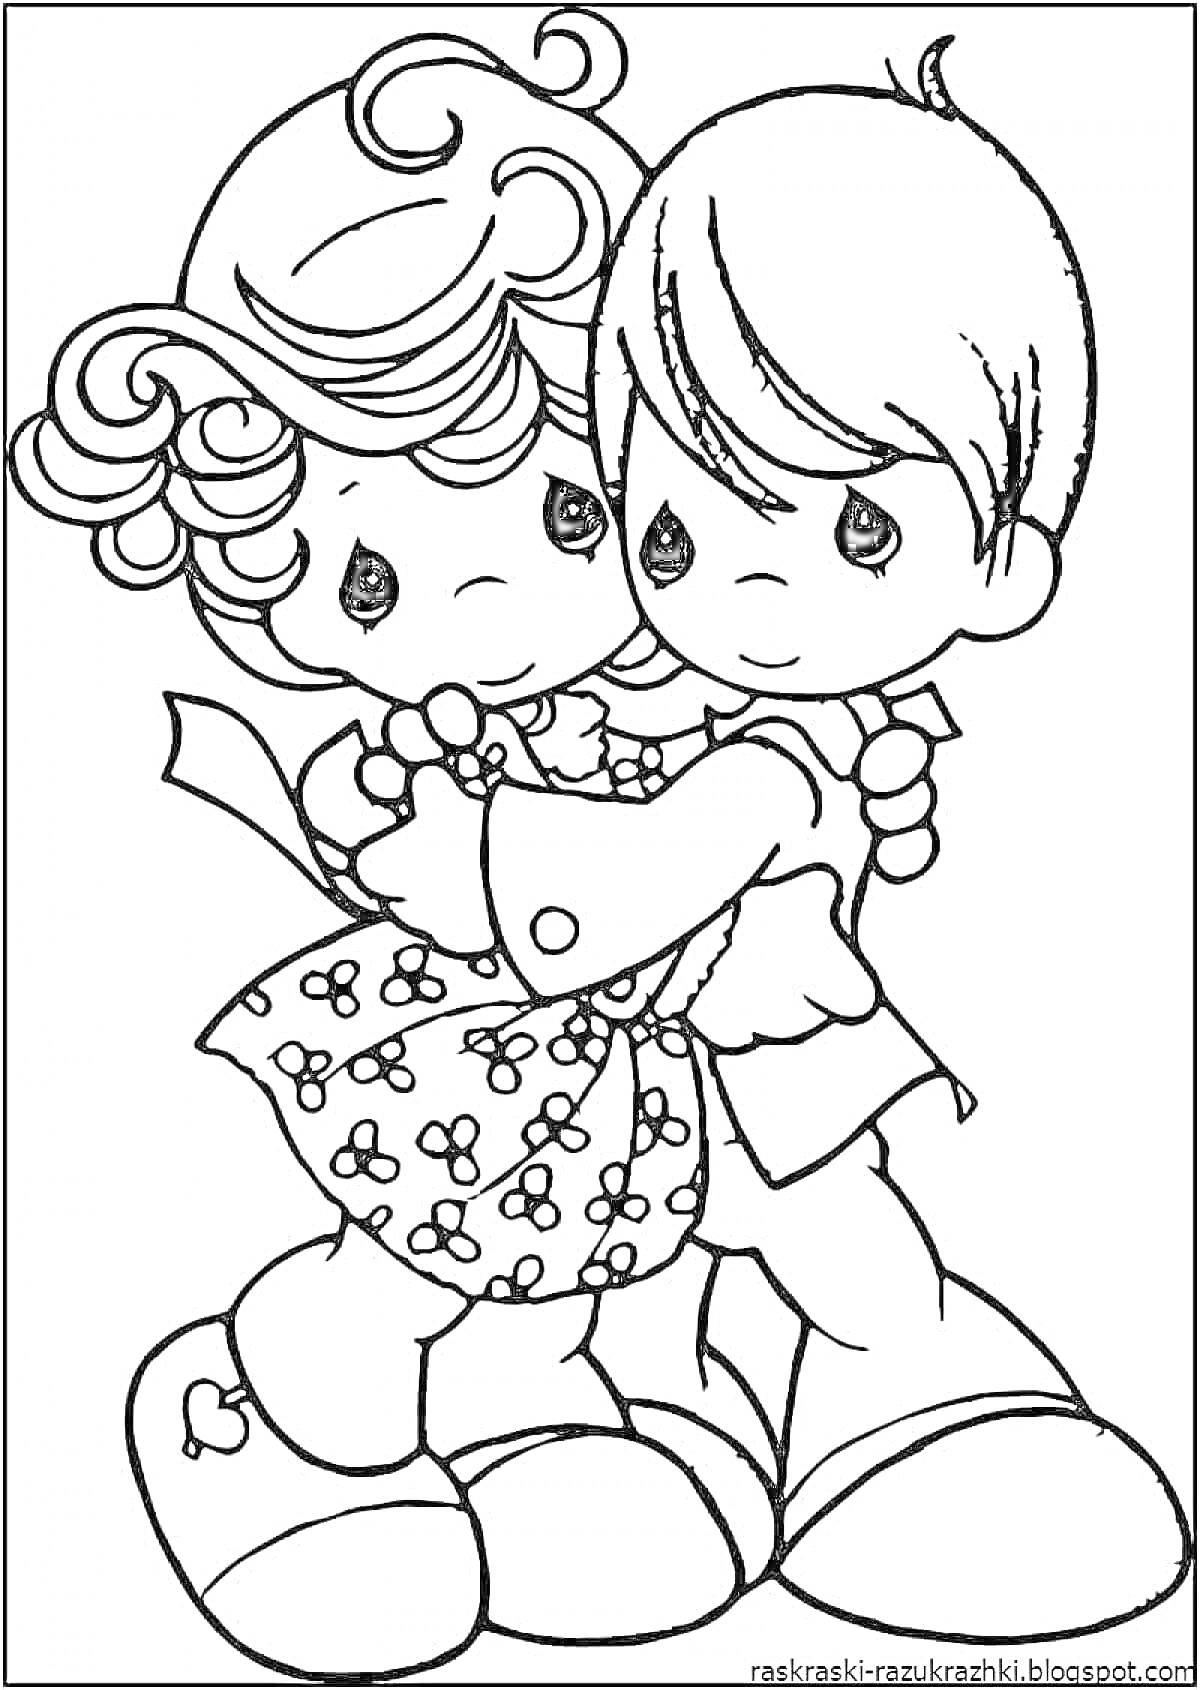 Раскраска Девочка с кудрями и бантом в платье с цветочным узором и мальчик обнимаются